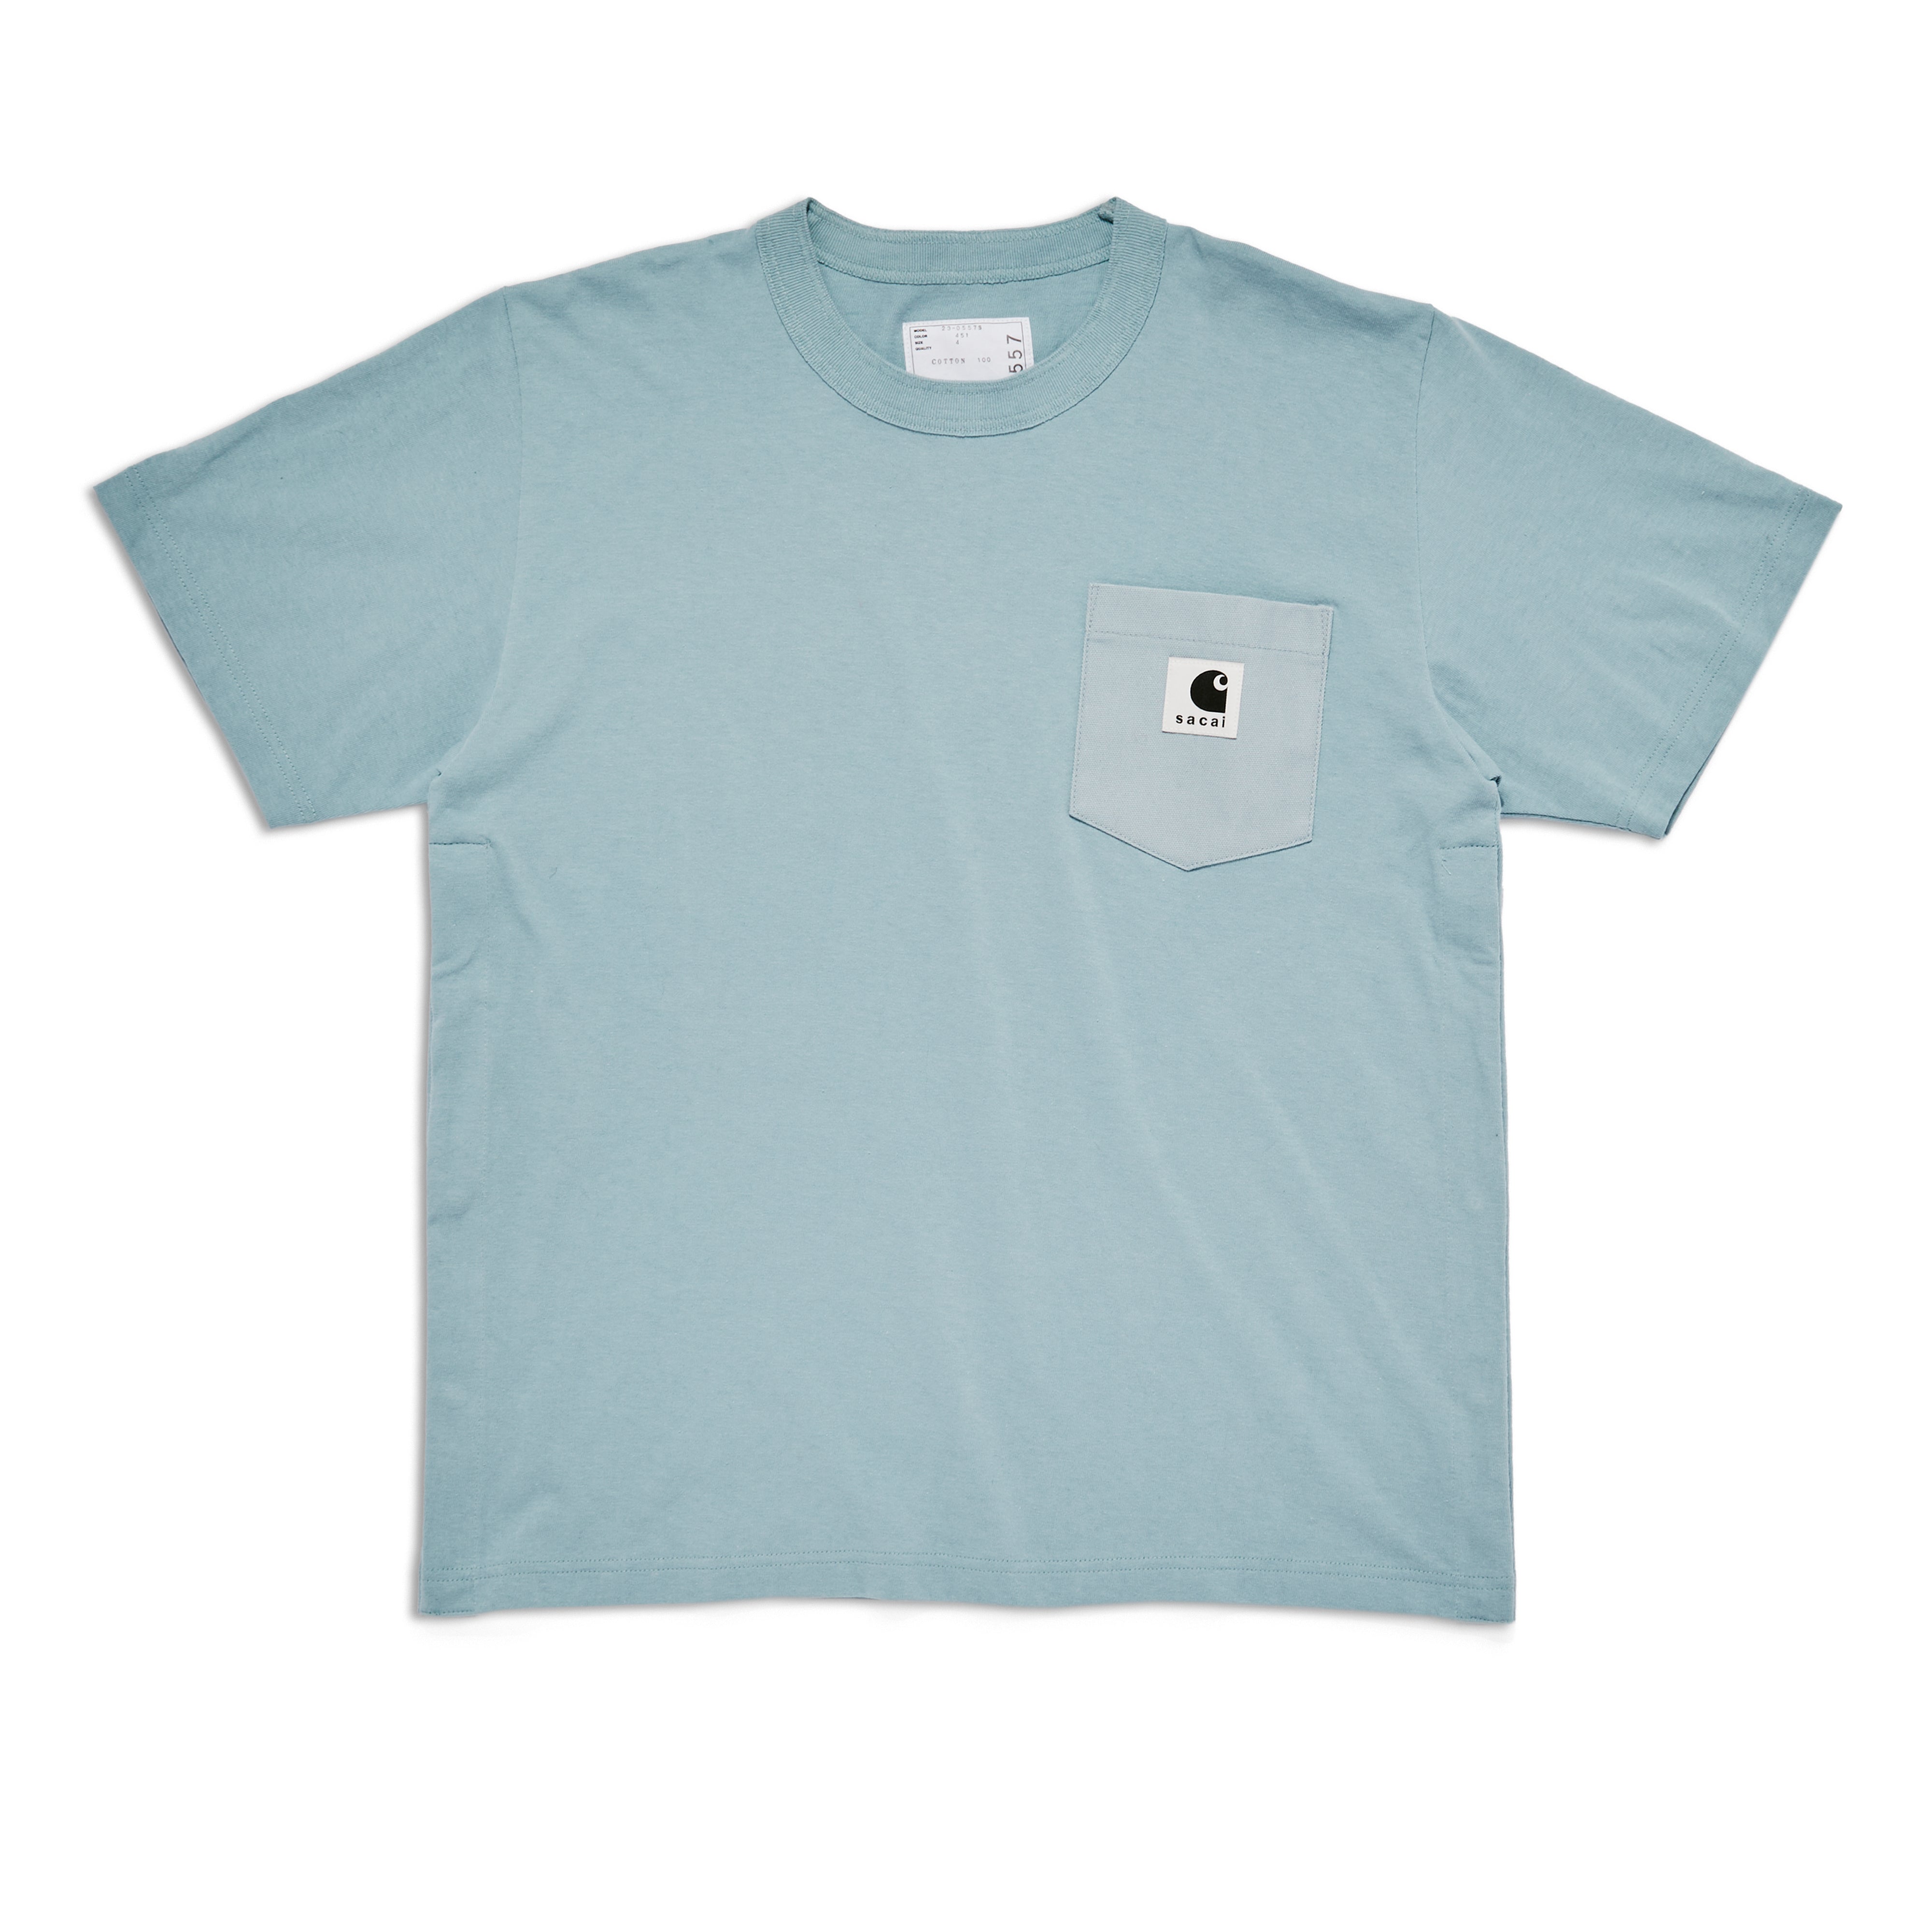 sacai - Carhartt WIP T-Shirt - (Light Blue) | Dover Street Market ...